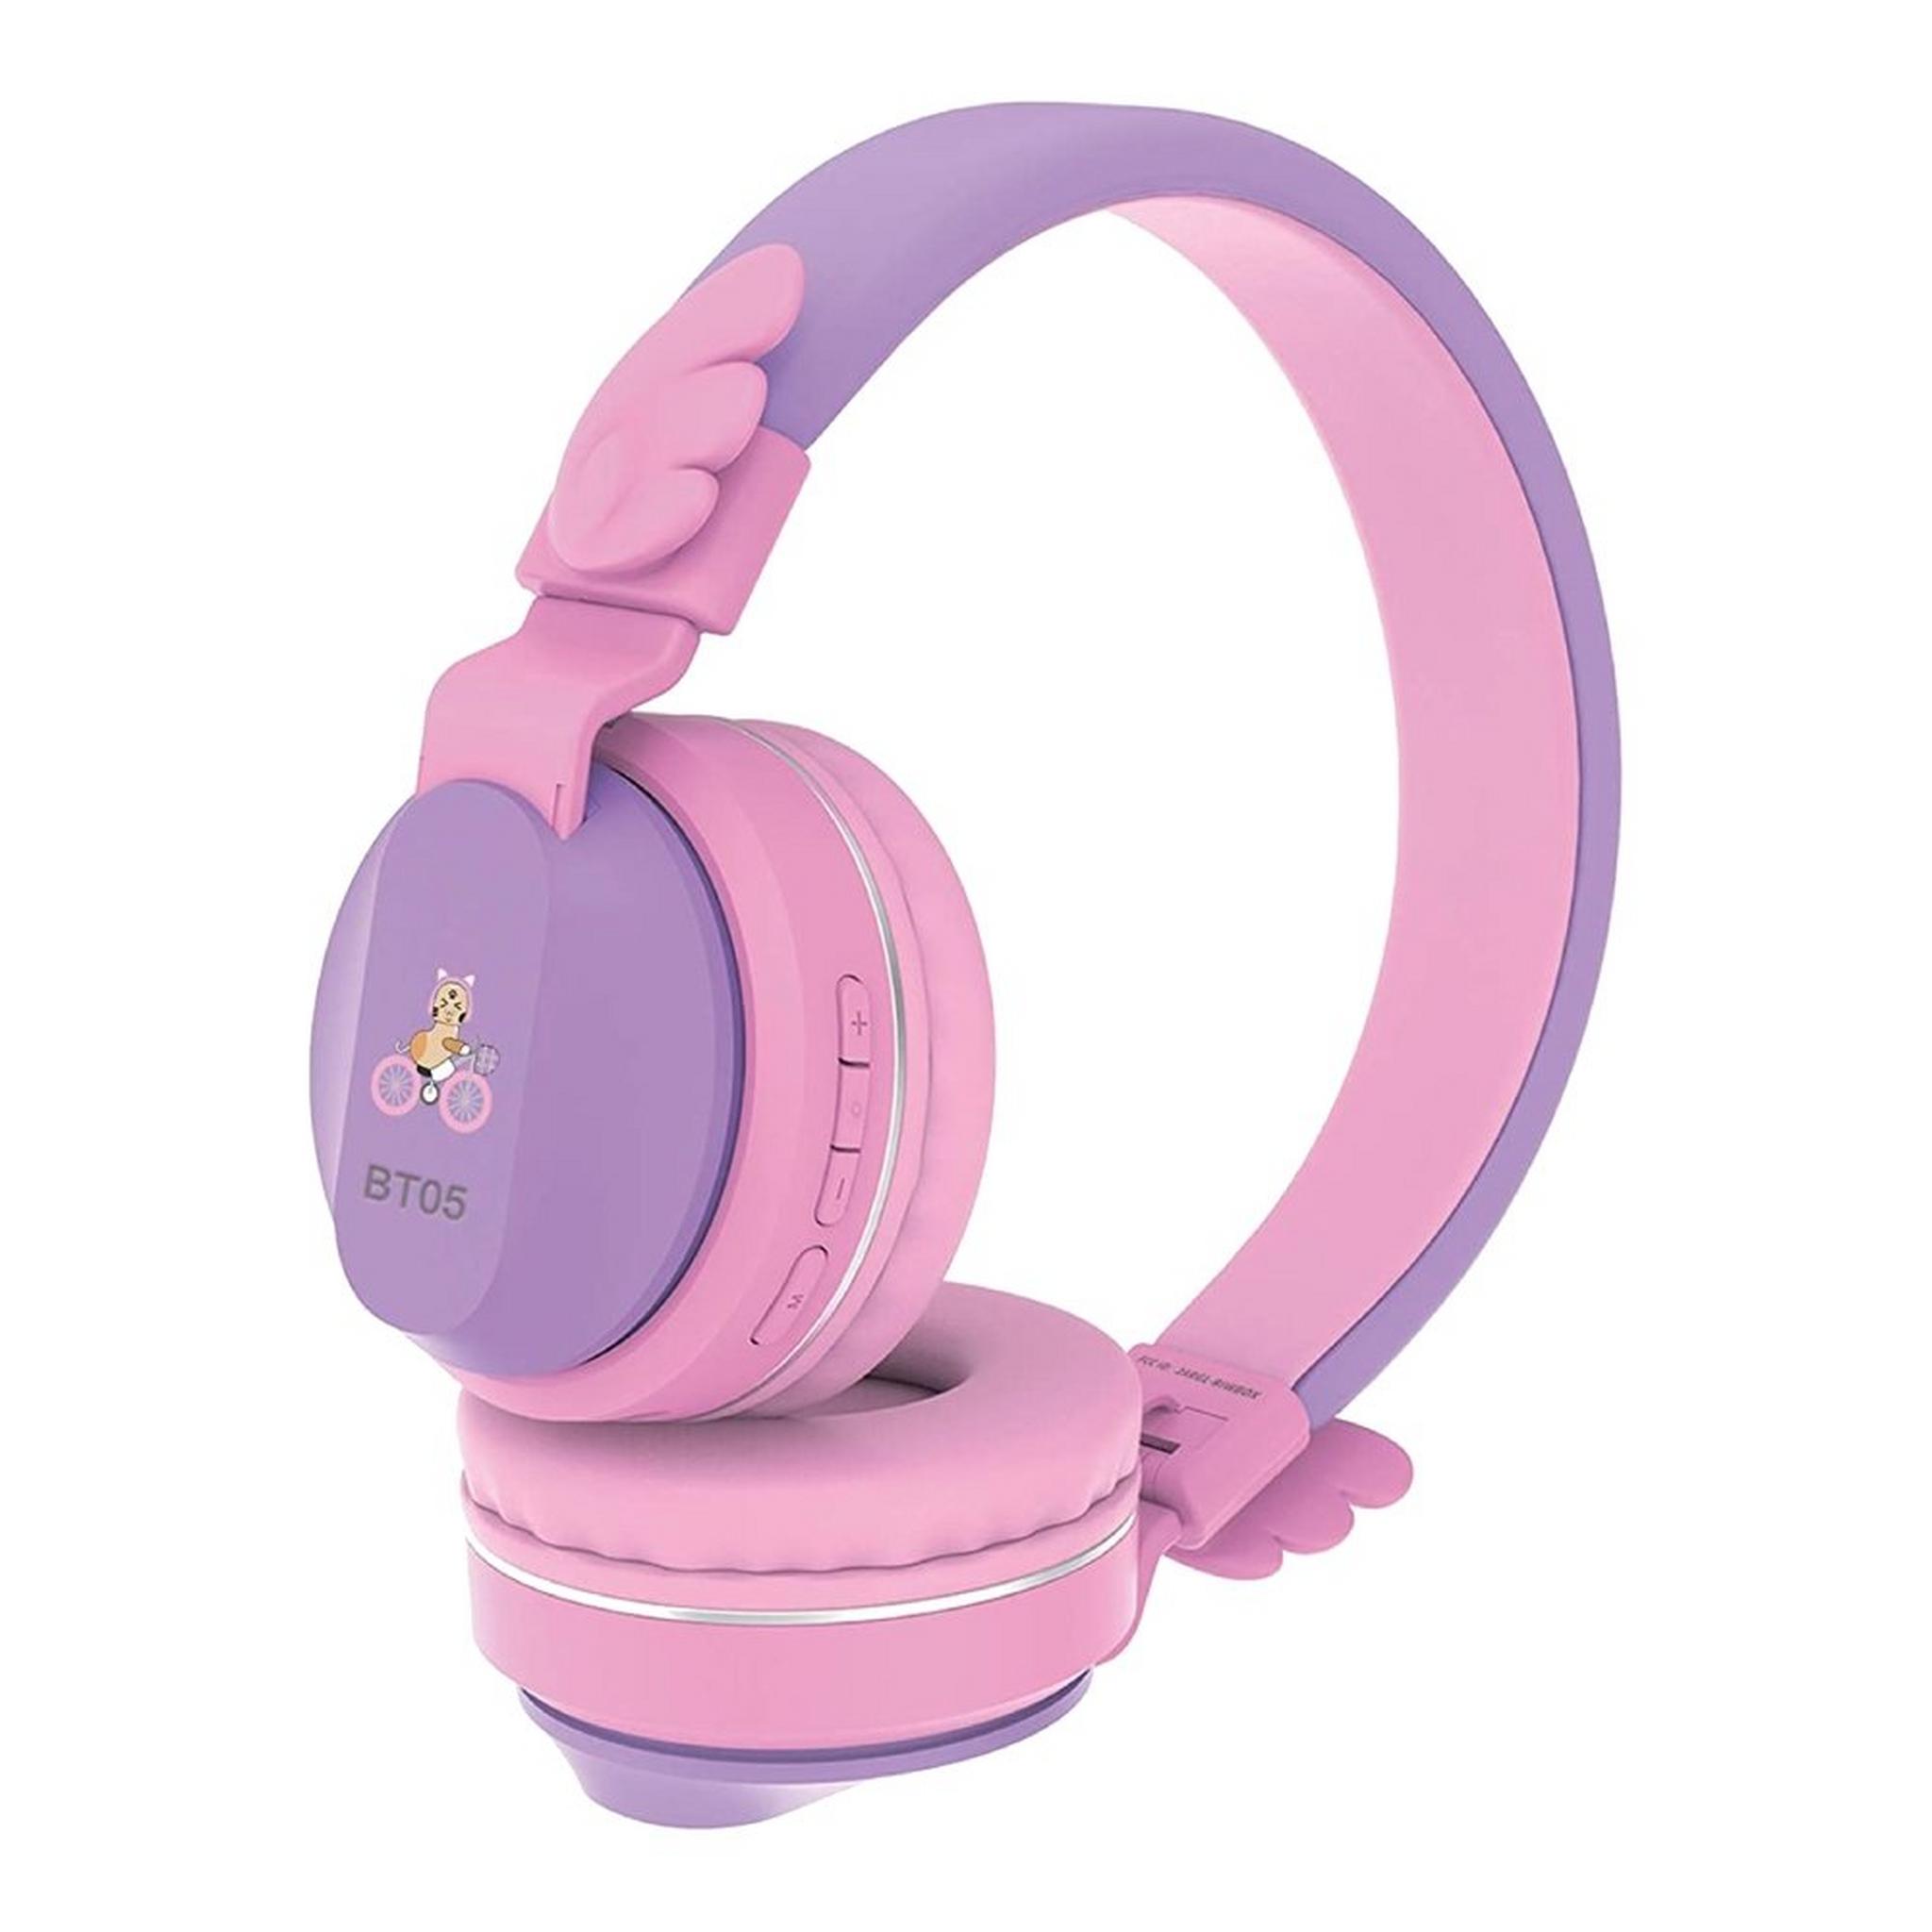 Riwbox Wings Kids Bluetooth Headphones - Purple/Pink